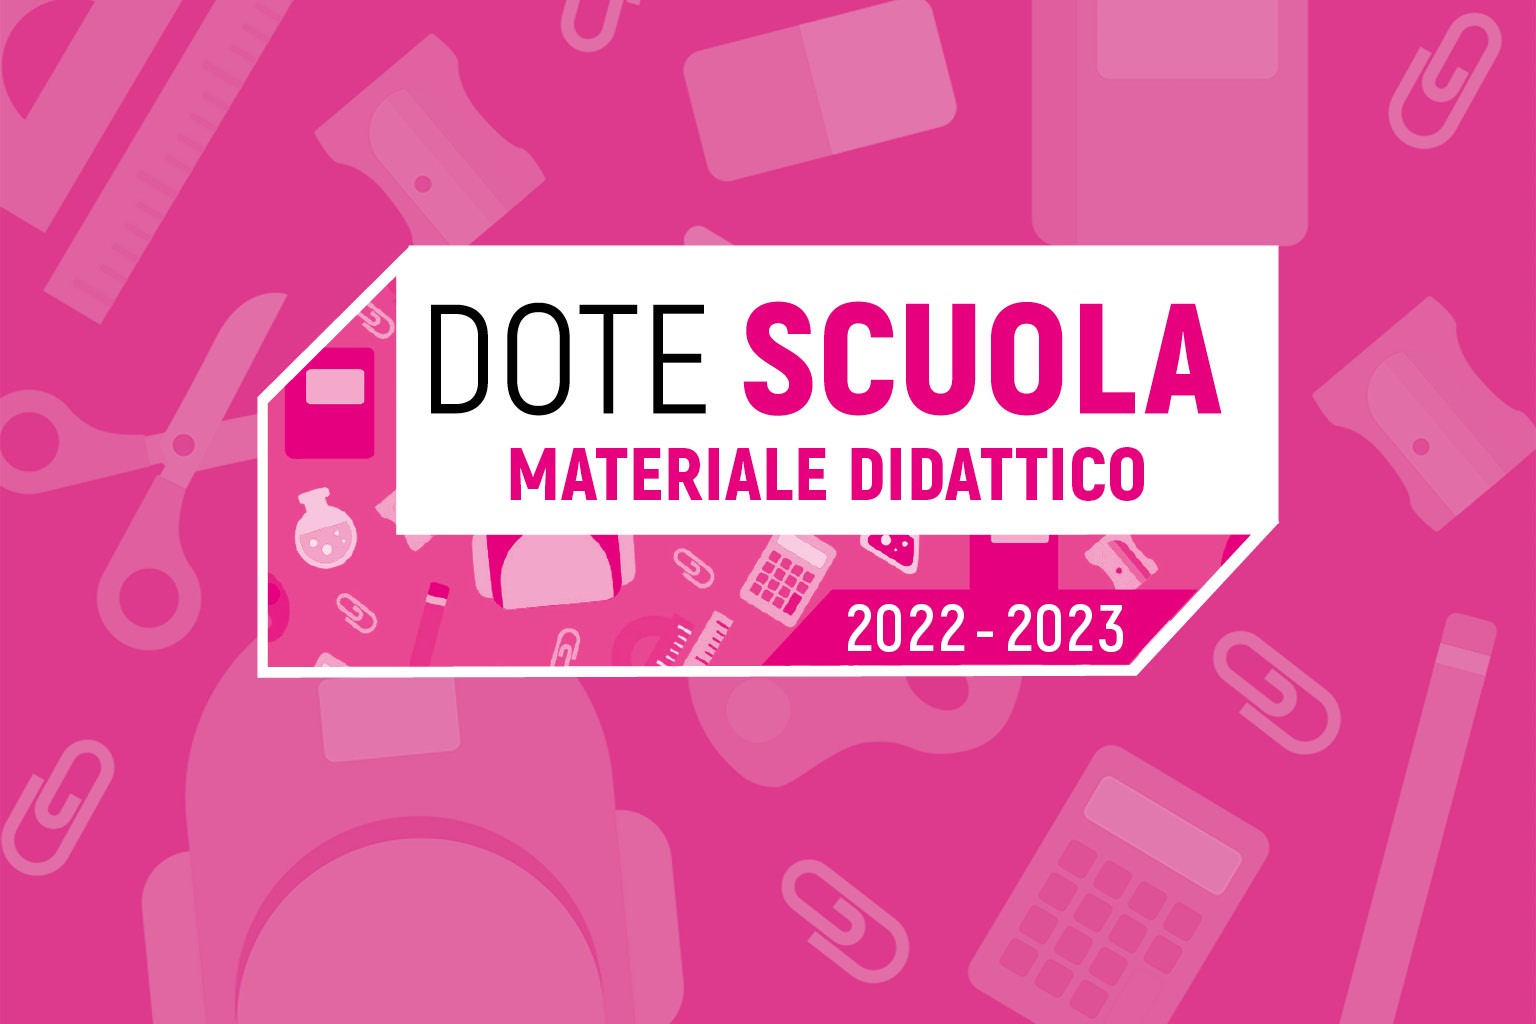 DOTE SCUOLA - MATERIALE DIDATTICO 2022/2023